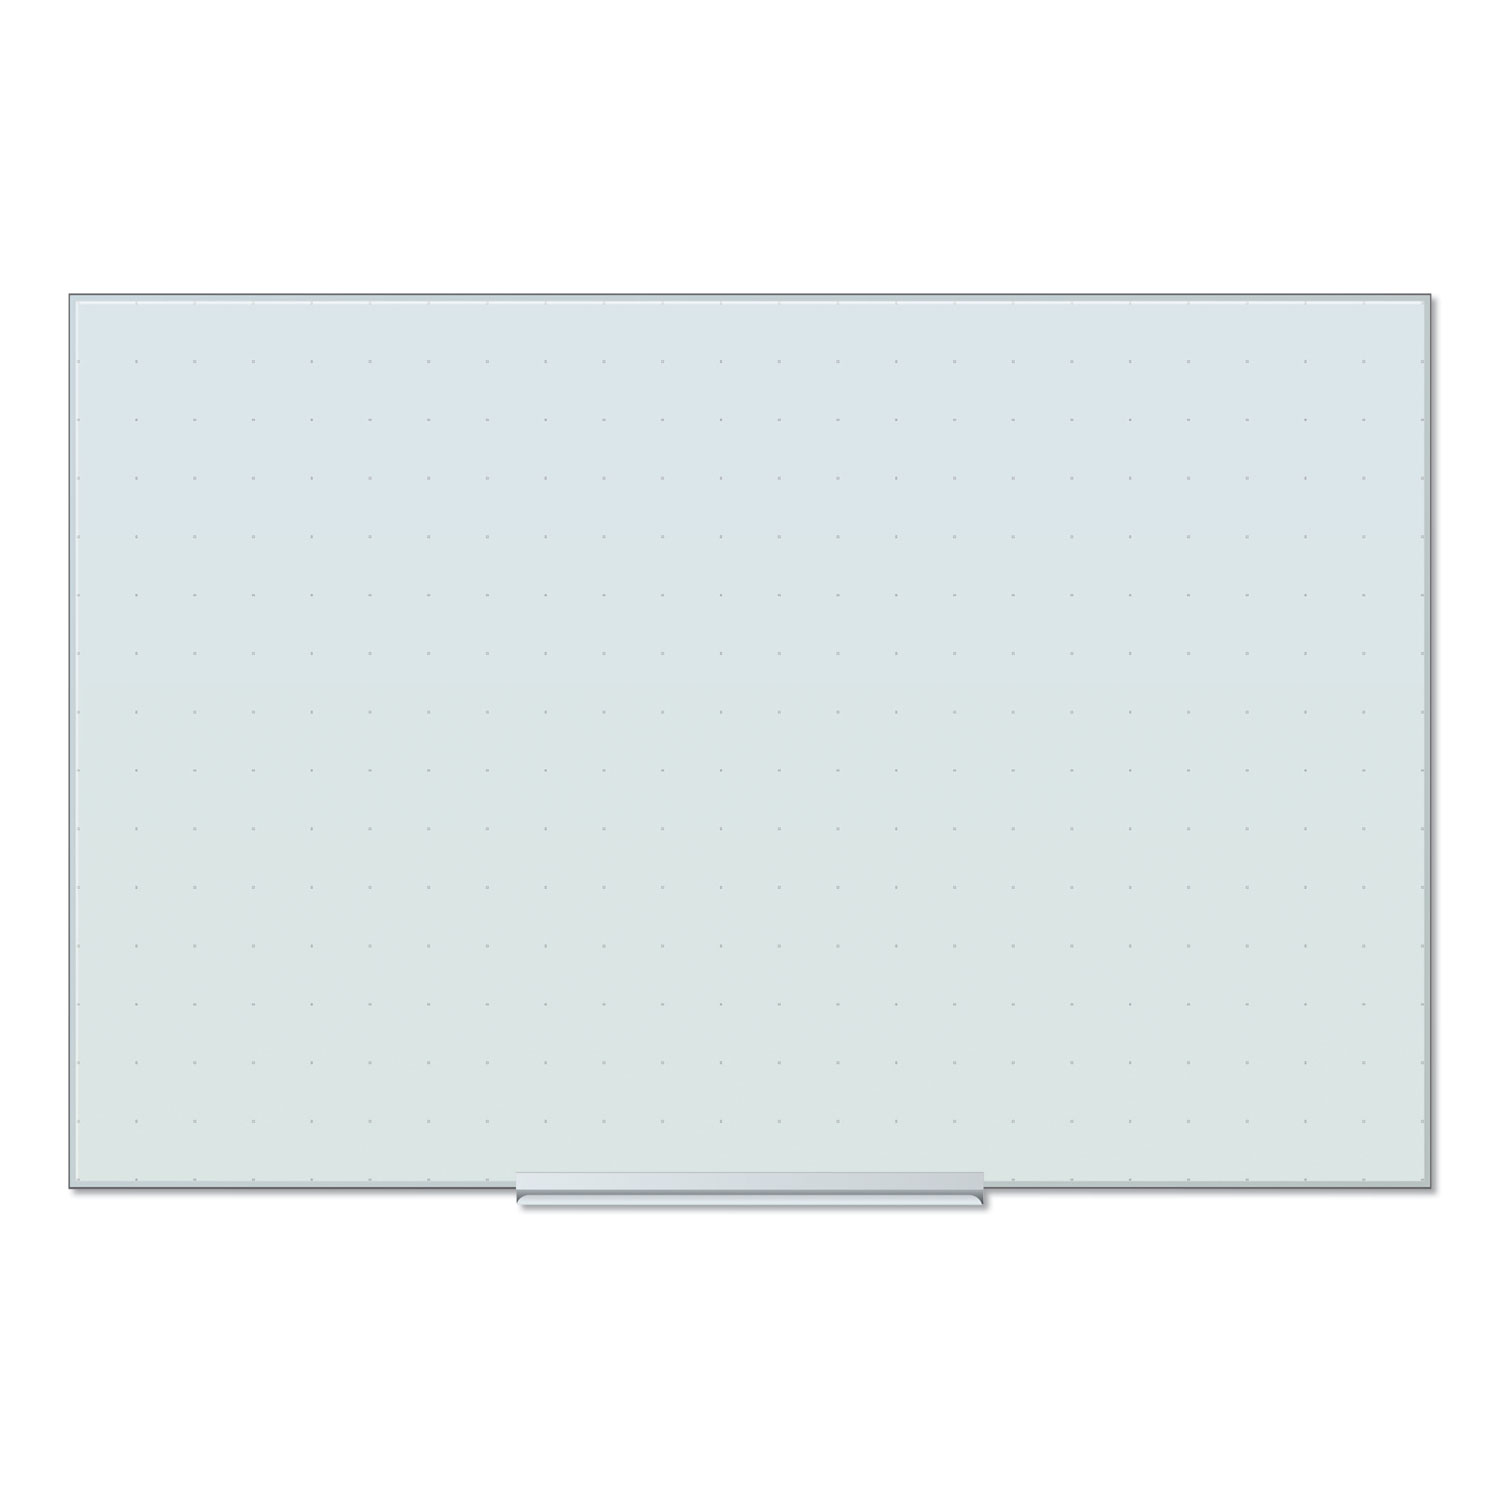  U Brands 2798U00-01 Floating Glass Ghost Grid Dry Erase Board, 36 x 24, White (UBR2798U0001) 